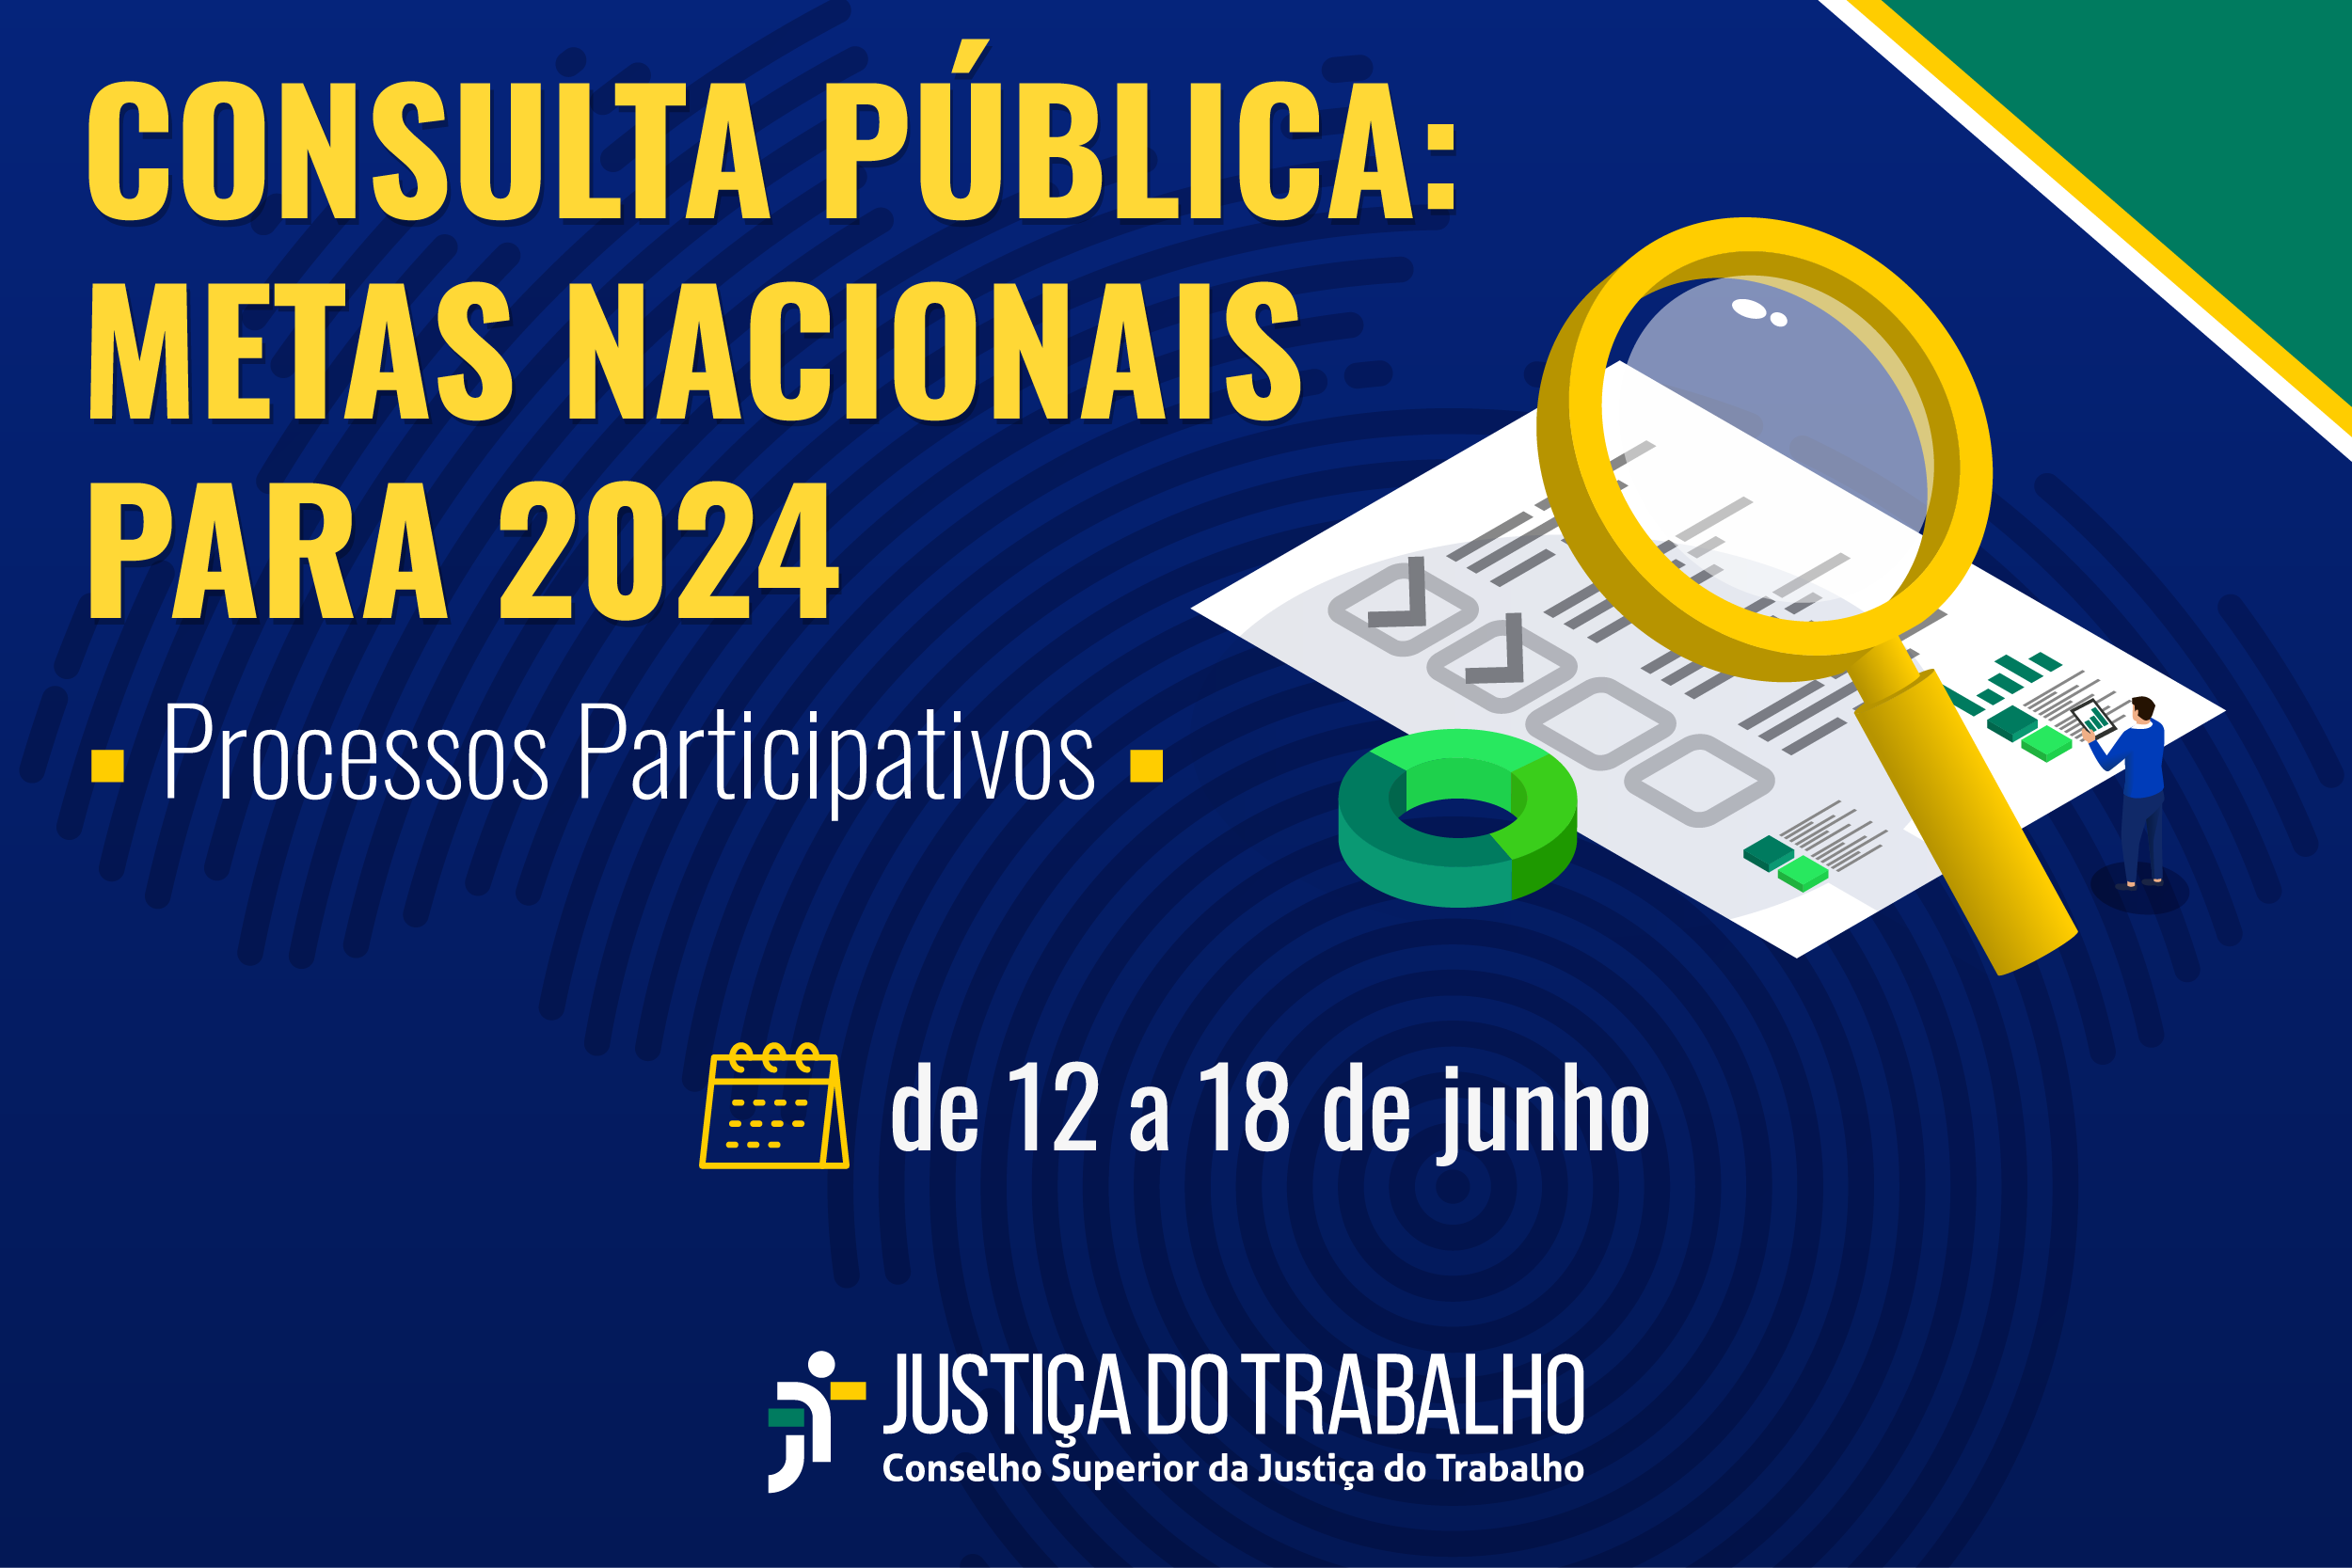 Justiça do Trabalho vai iniciar consulta pública de metas nacionais de 2024 na próxima segunda (12)